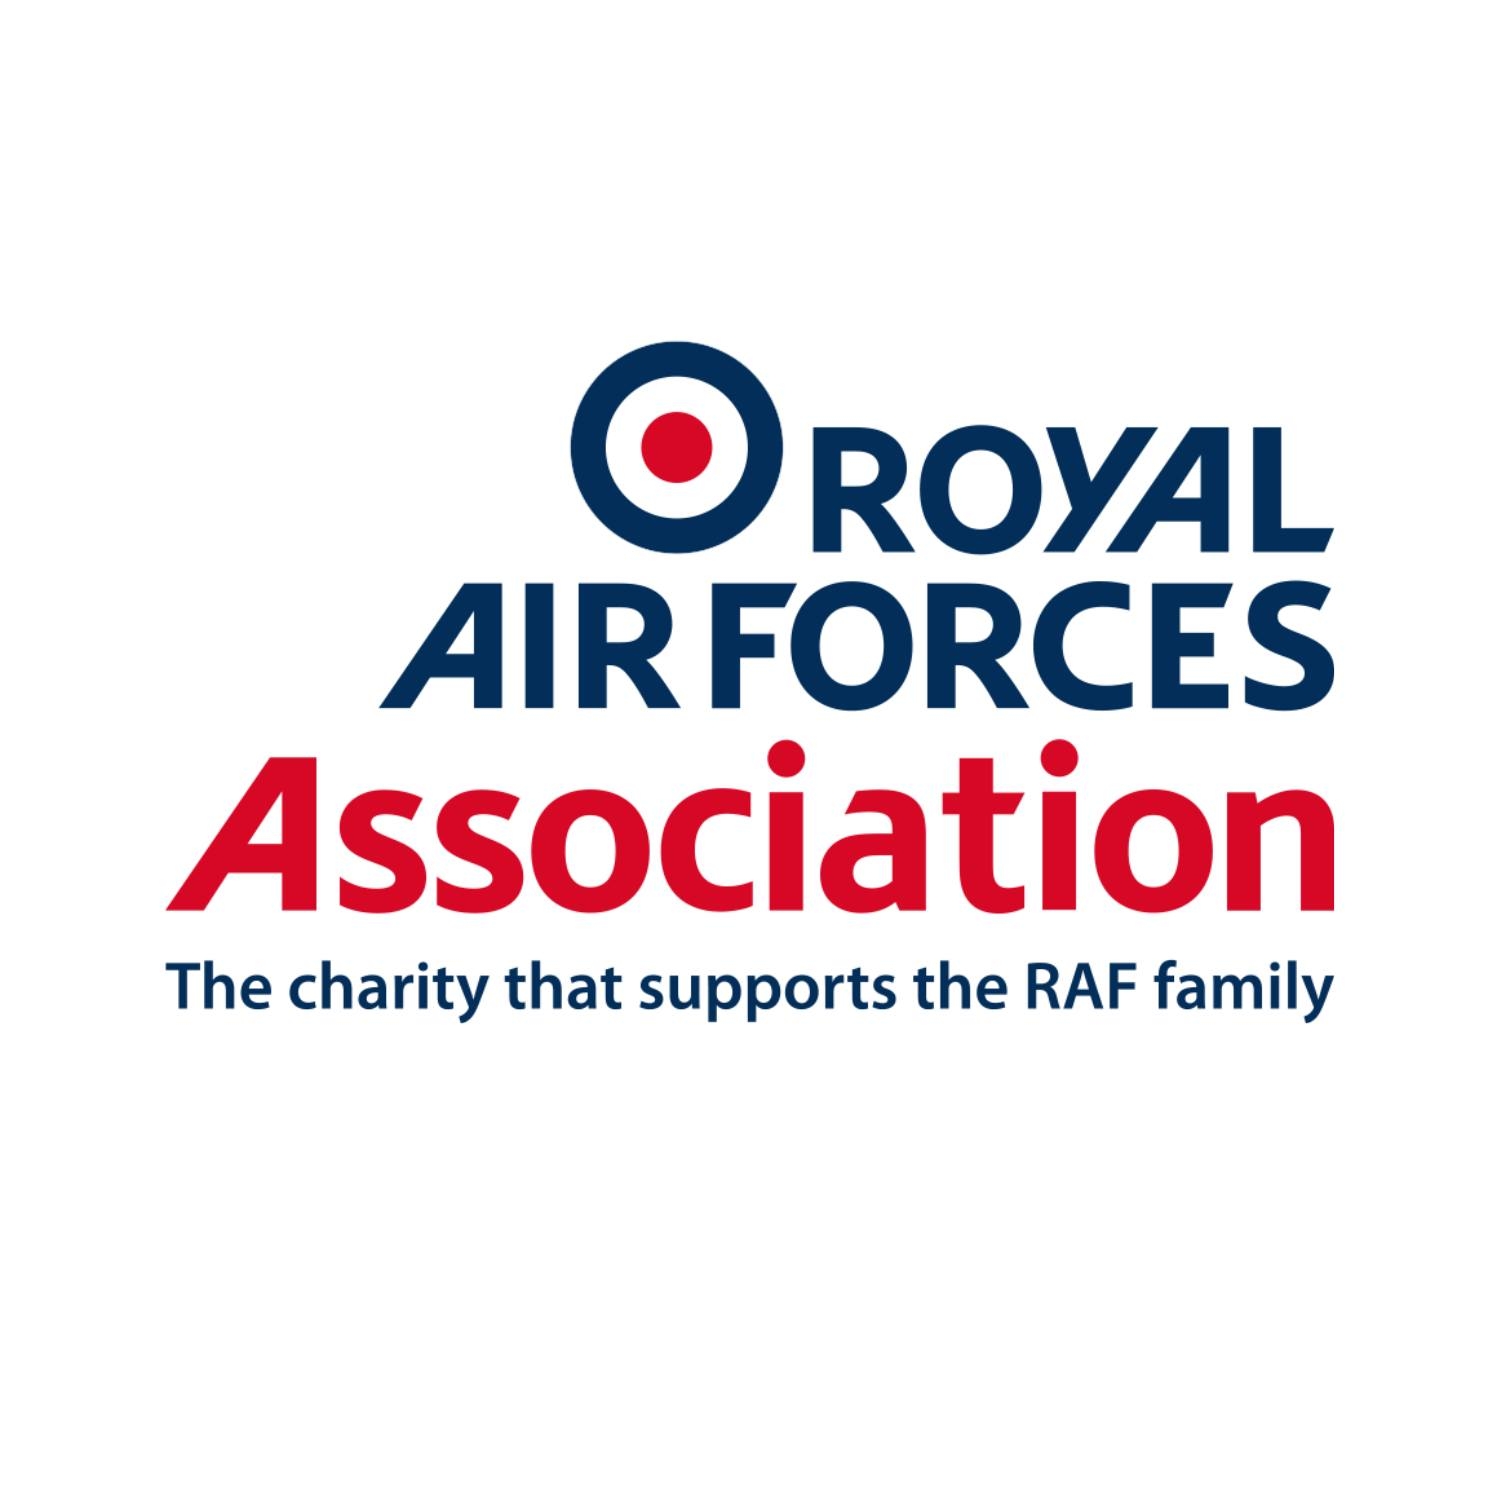 RAF Association charity